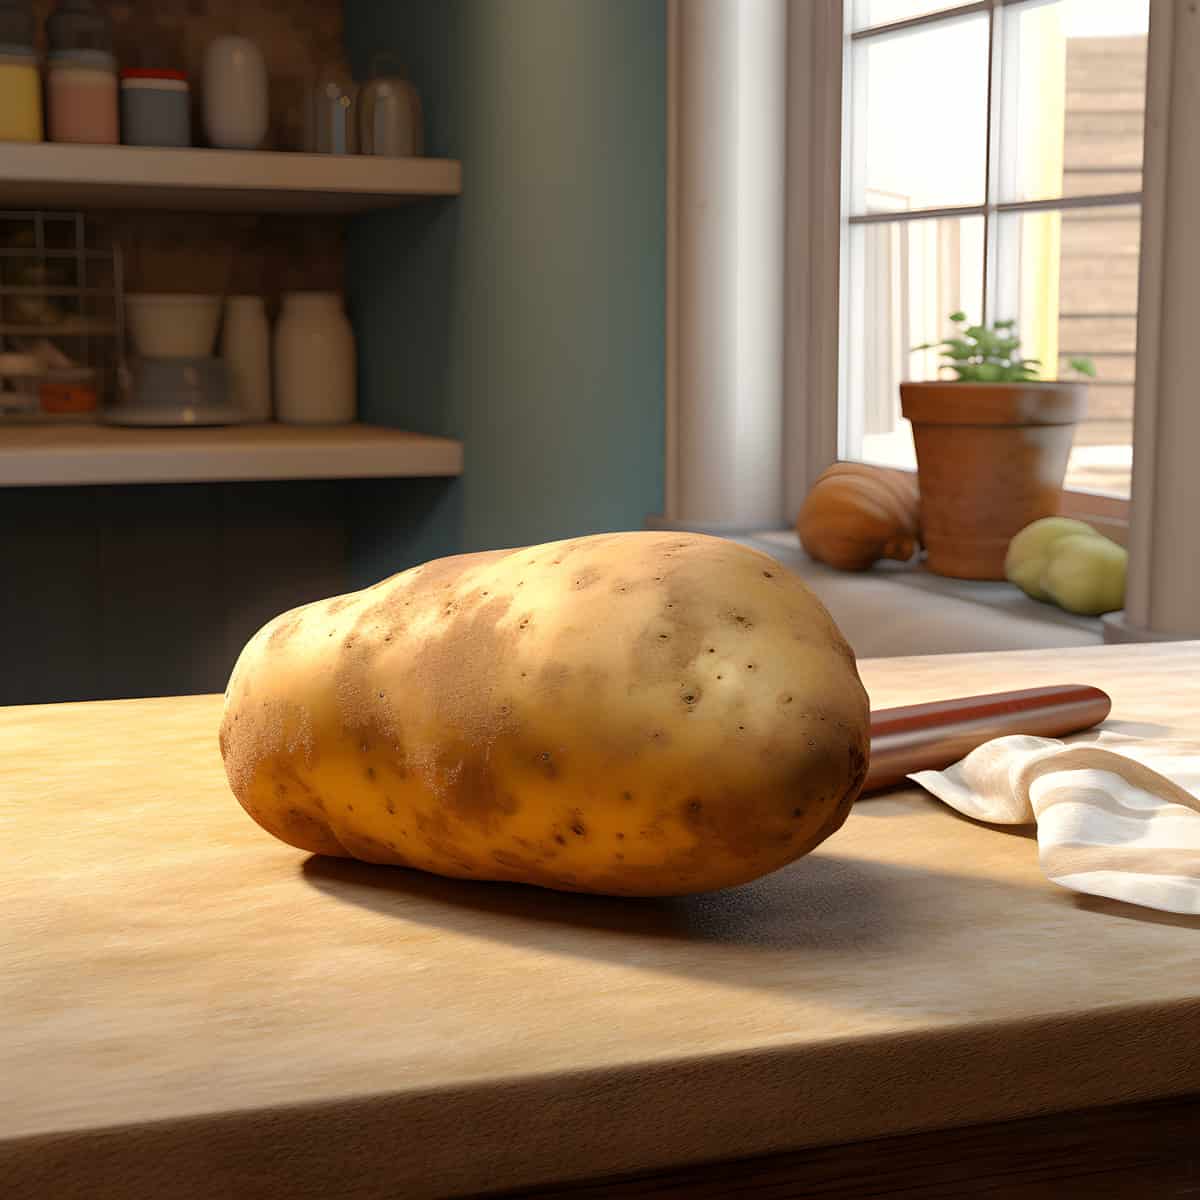 Bonnotte Potatoes on a kitchen counter